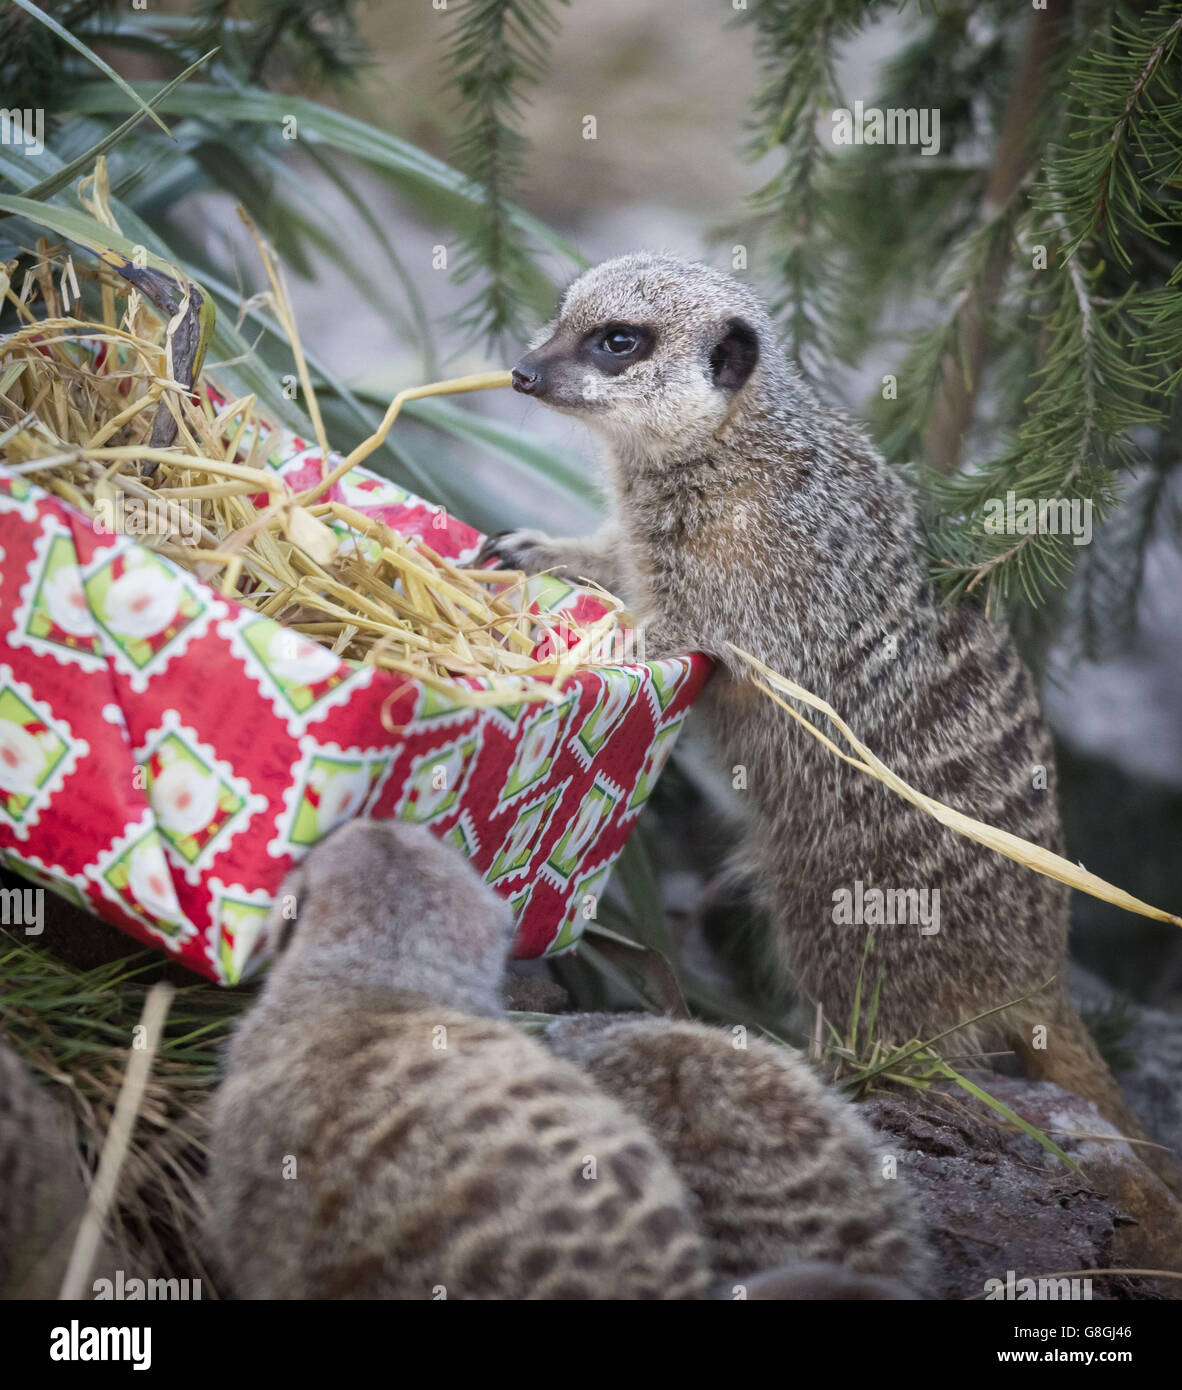 Los manerkats exploran un regalo de Navidad que contiene comida en el Zoo Five Sisters en West Lothian, Escocia. Foto de stock